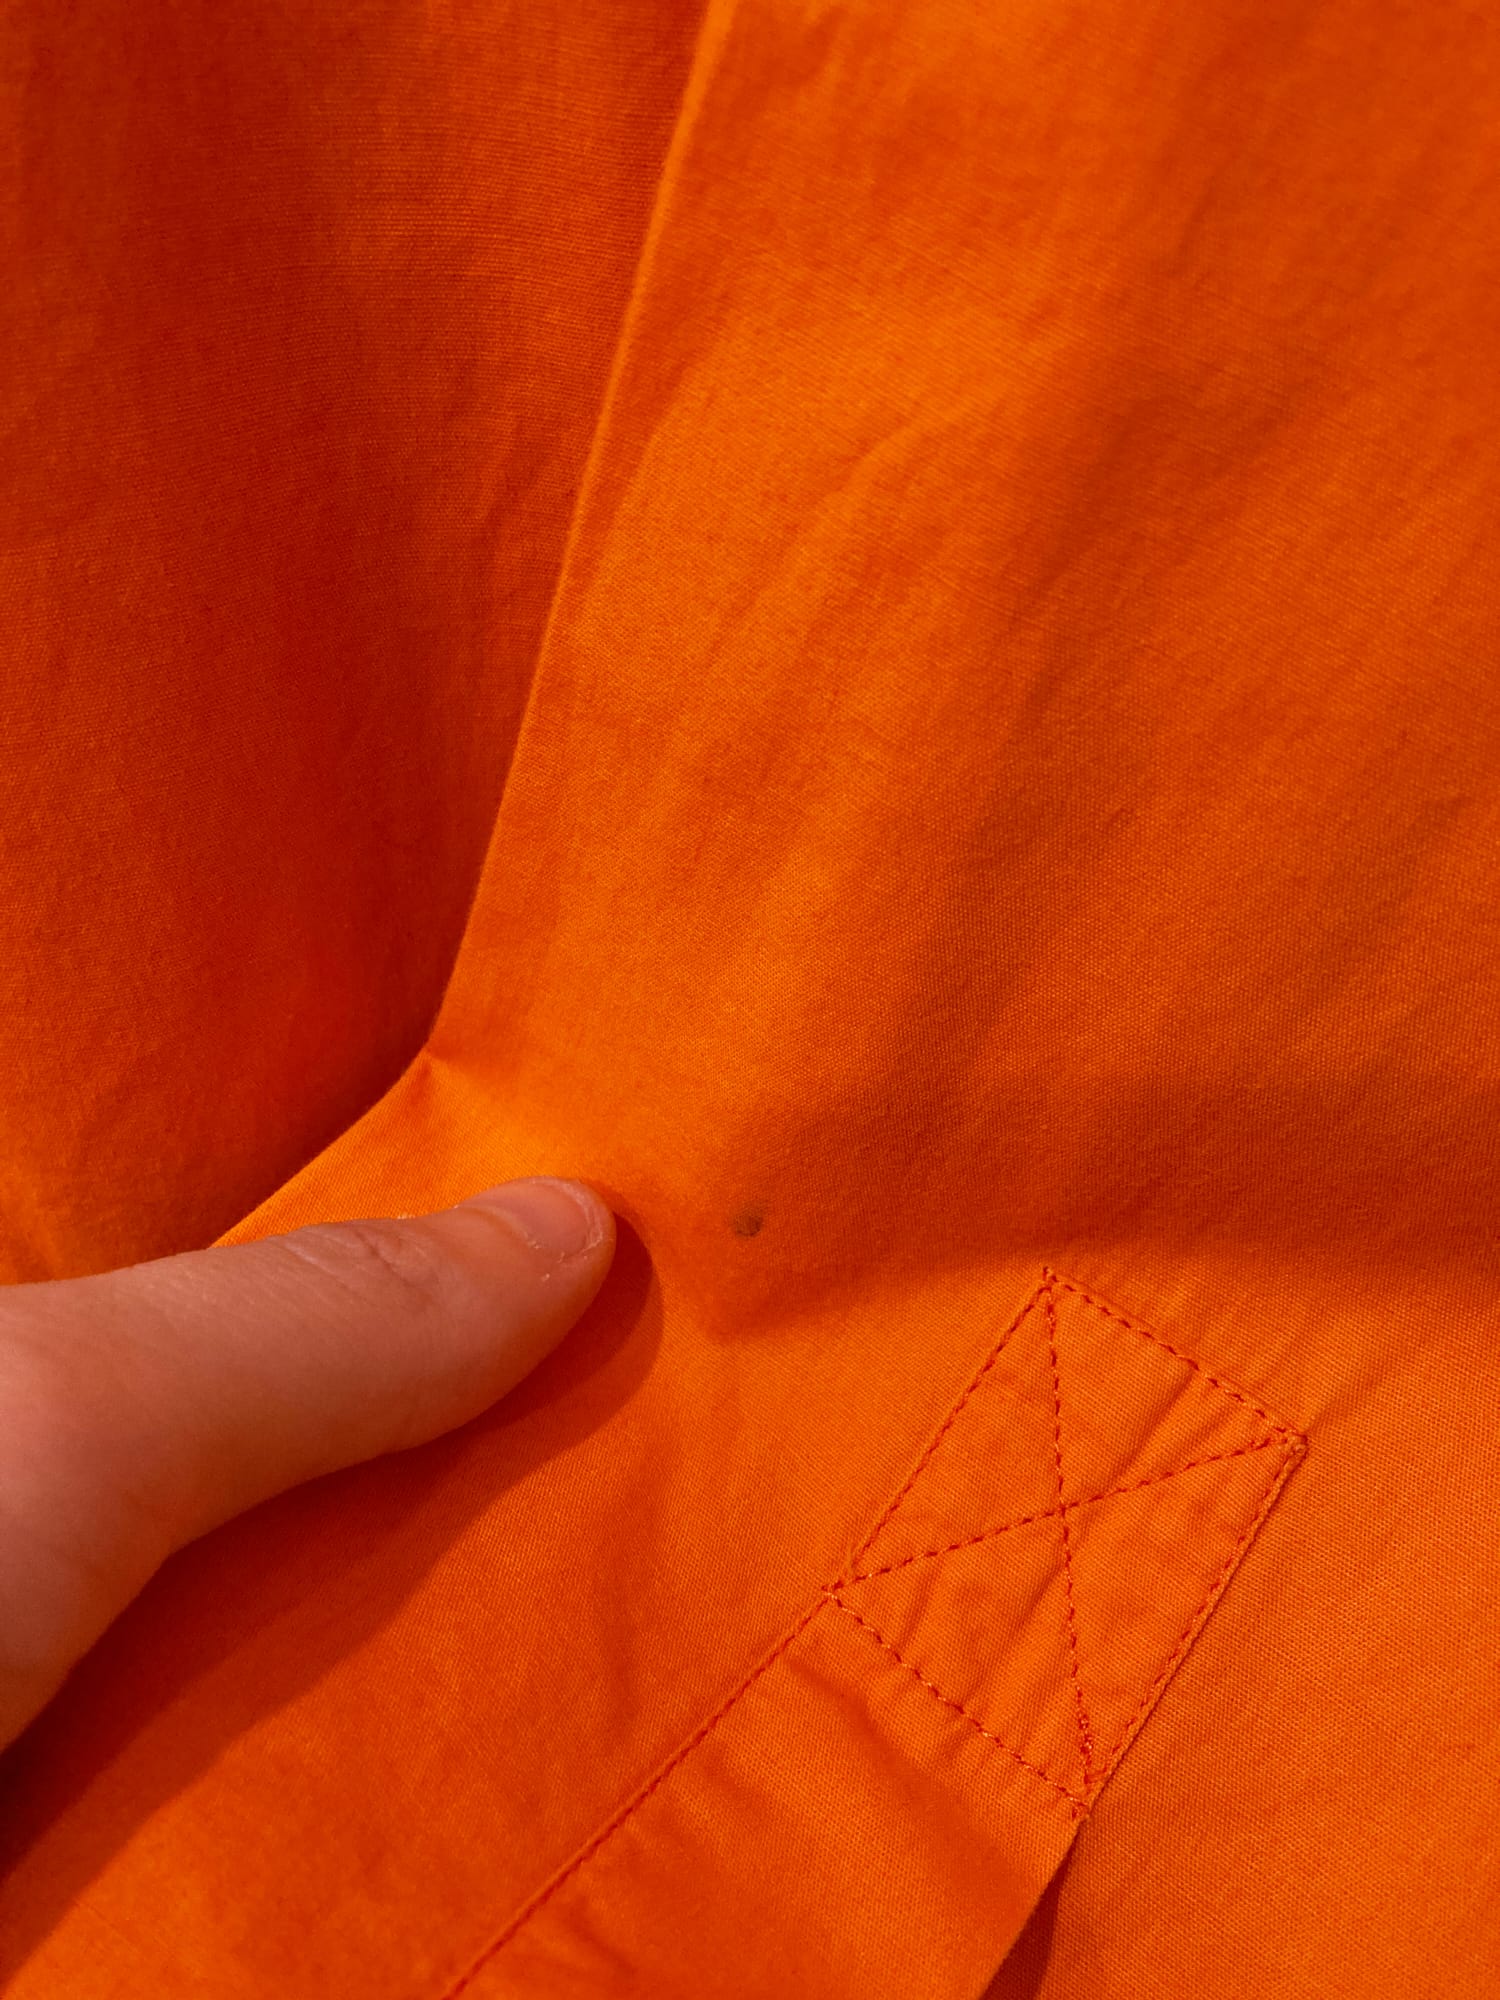 Dirk Bikkembergs Hommes 1990s orange cotton metal button shirt - M